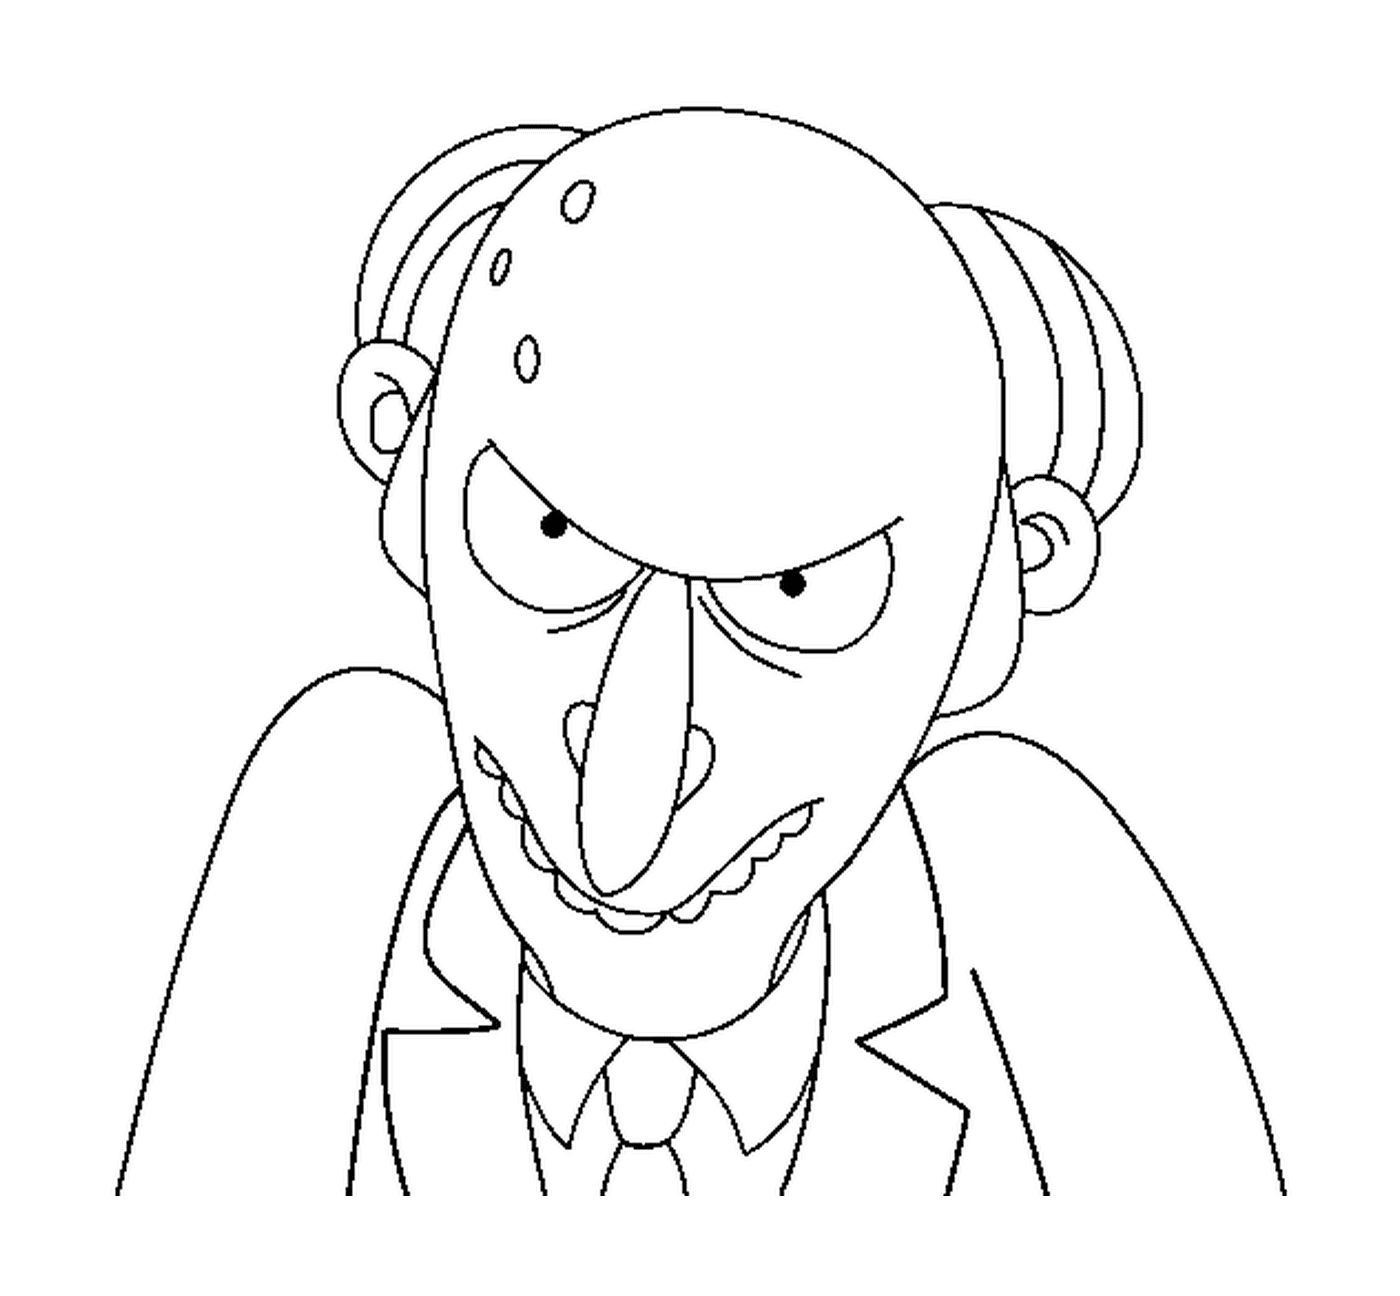 coloriage dessin simpson Mr Burns de face